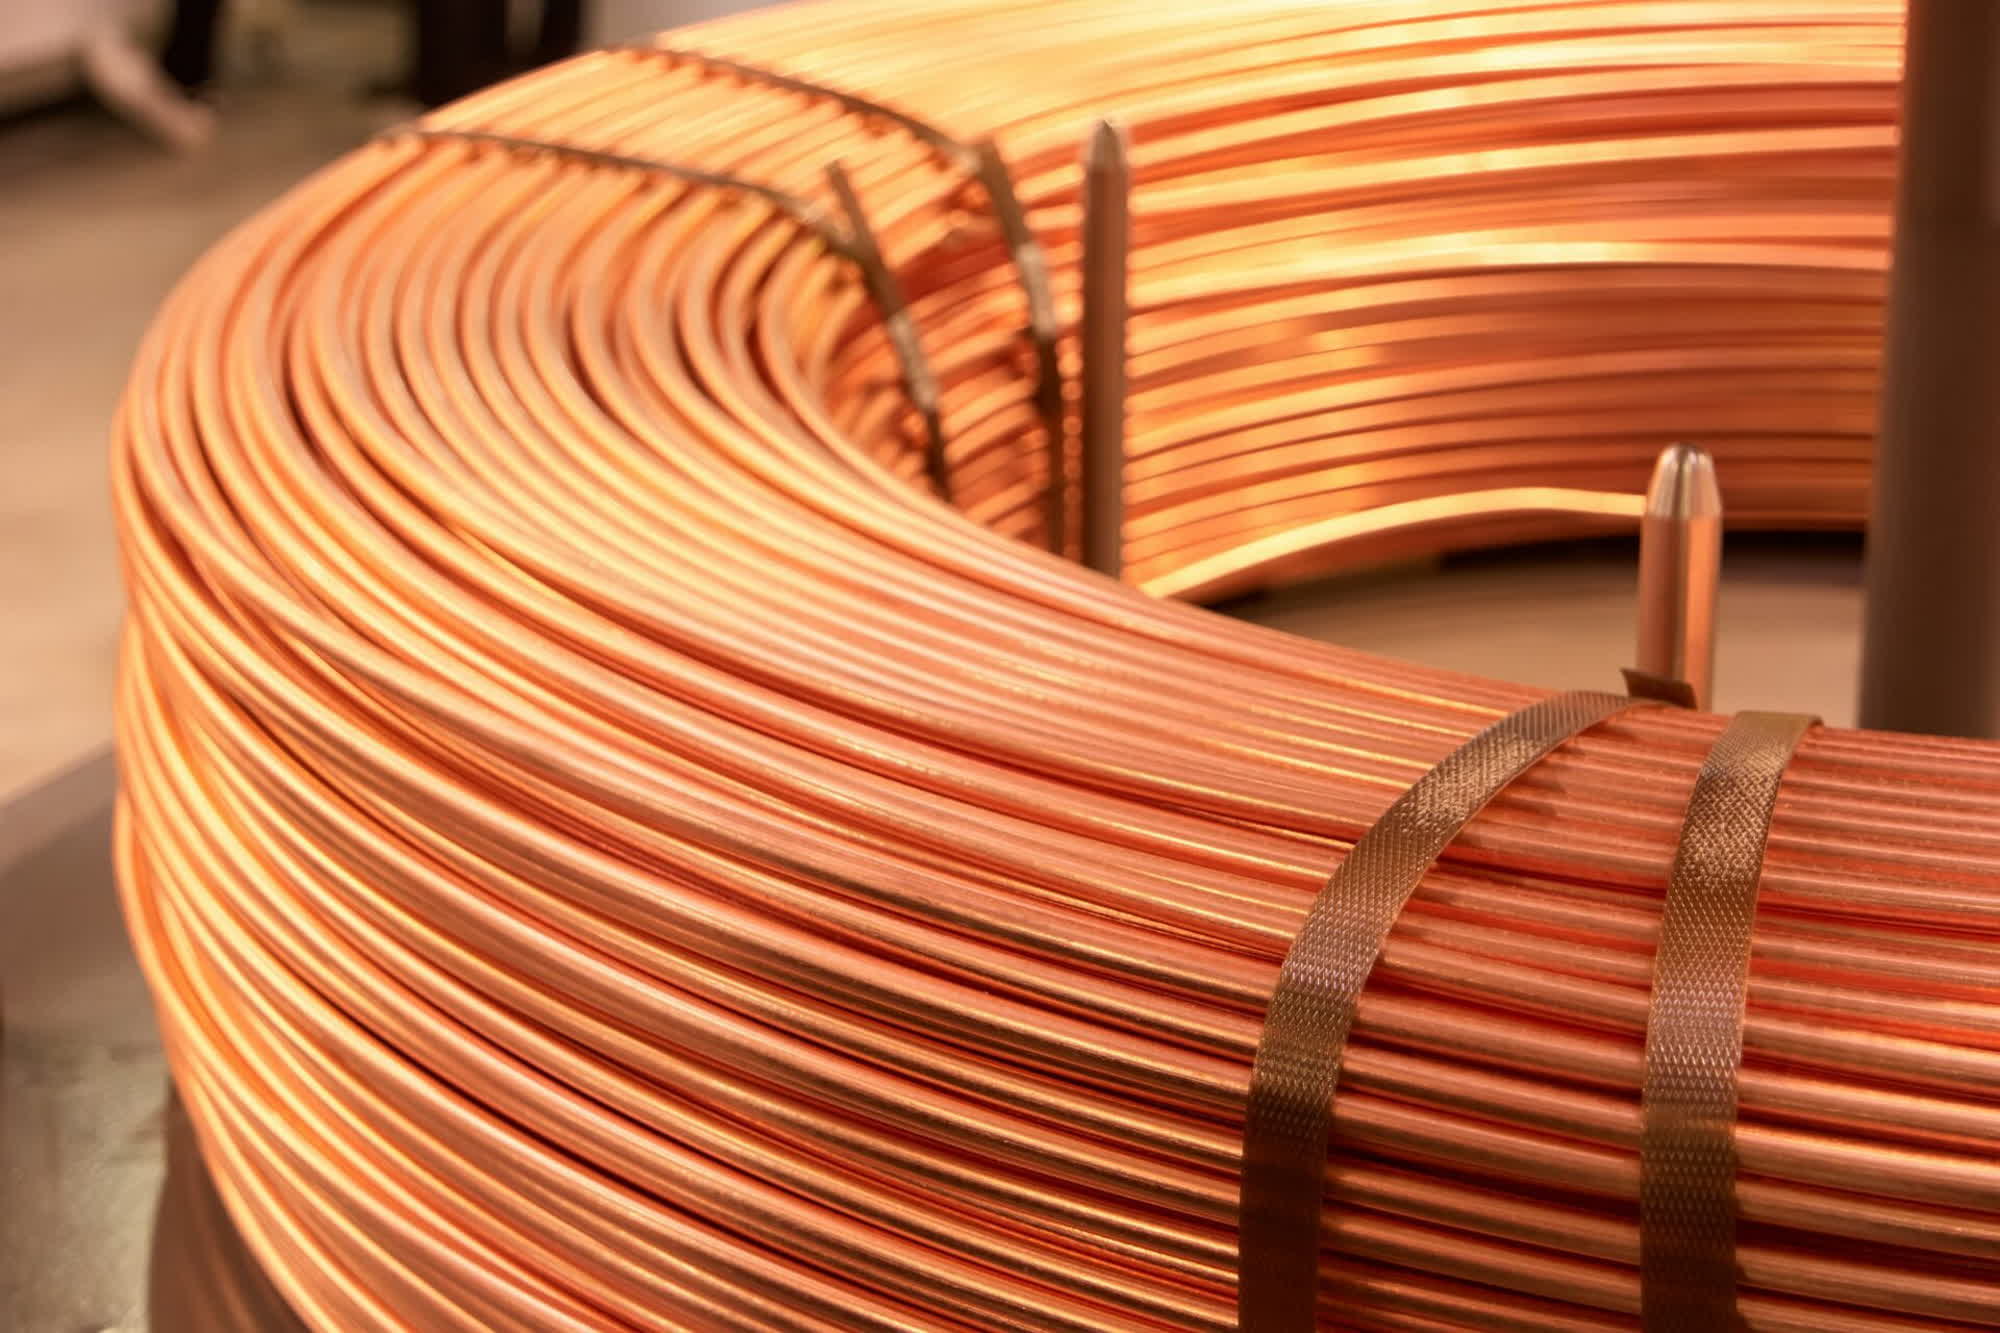 Las empresas de telecomunicaciones se encuentran sobre una mina de oro de alambre de cobre enterrado